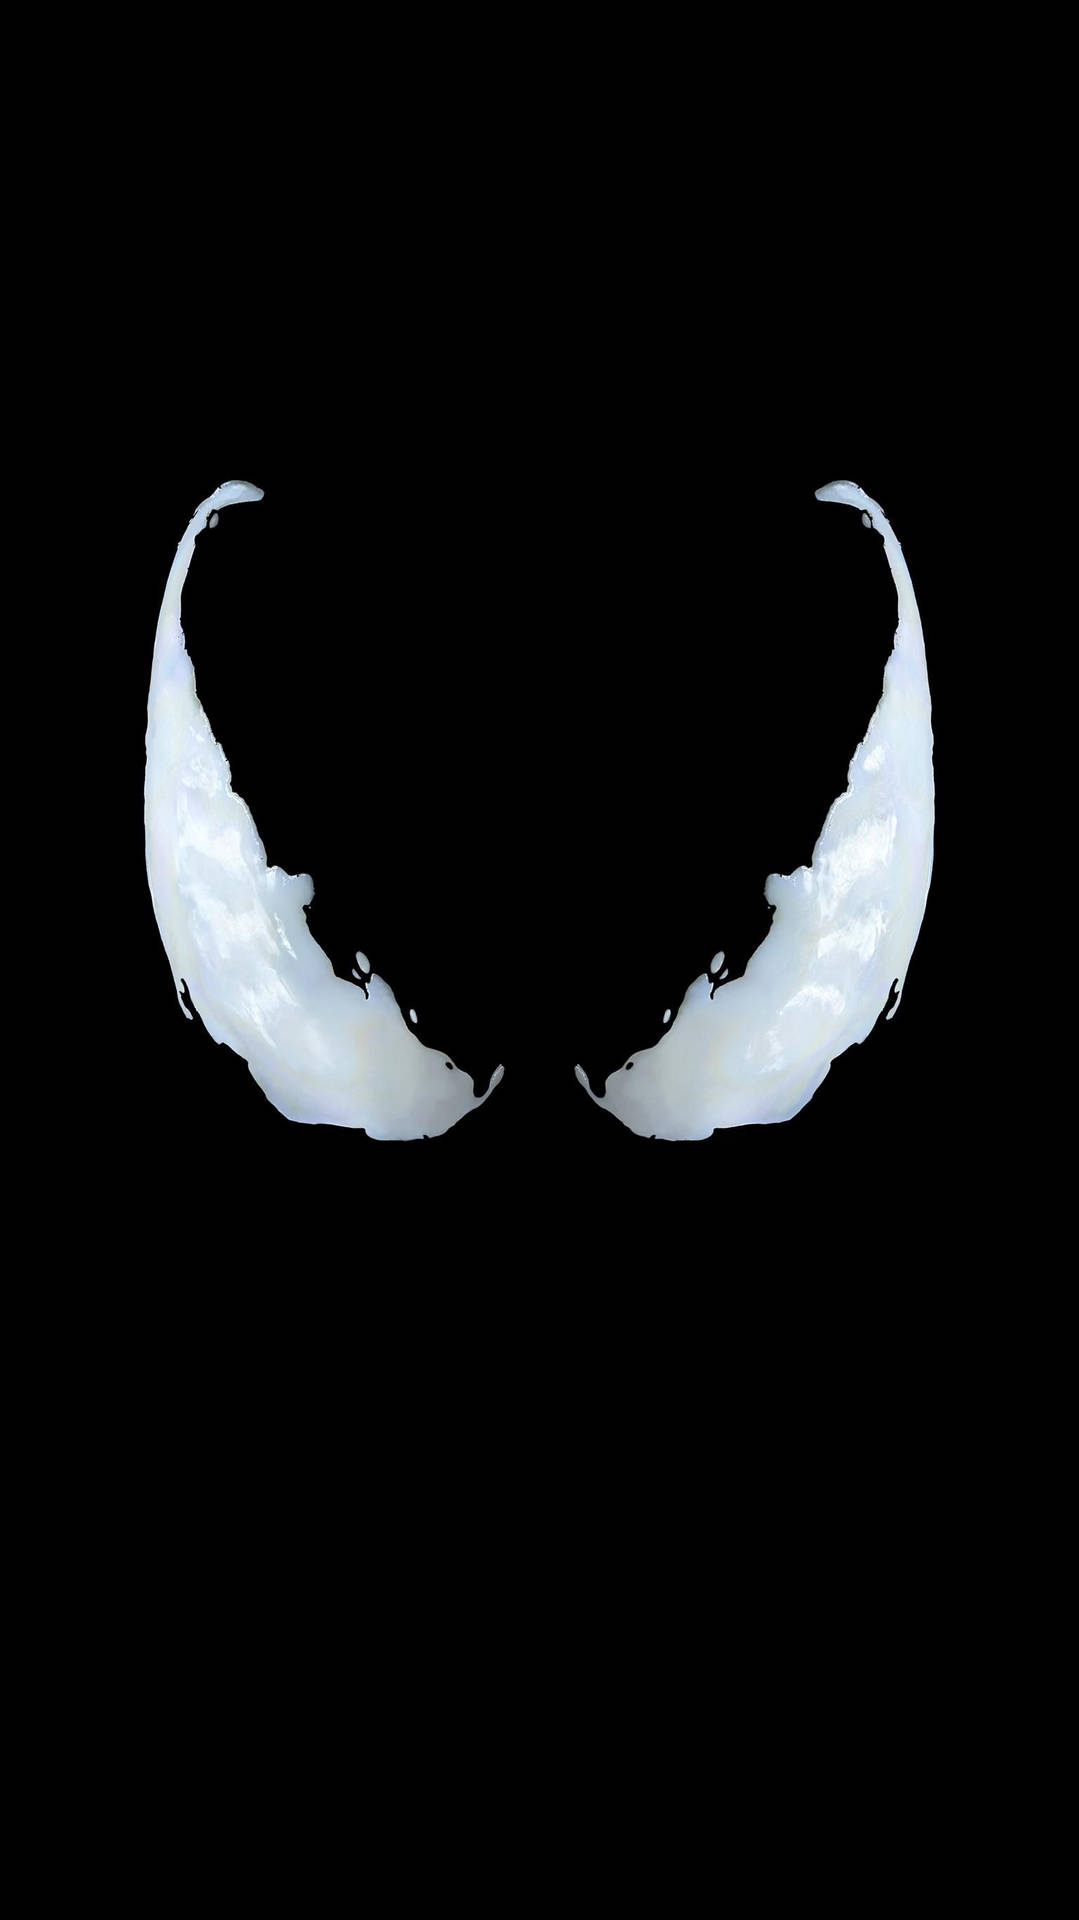 Venom Movie Iconic White Eyes Wallpaper